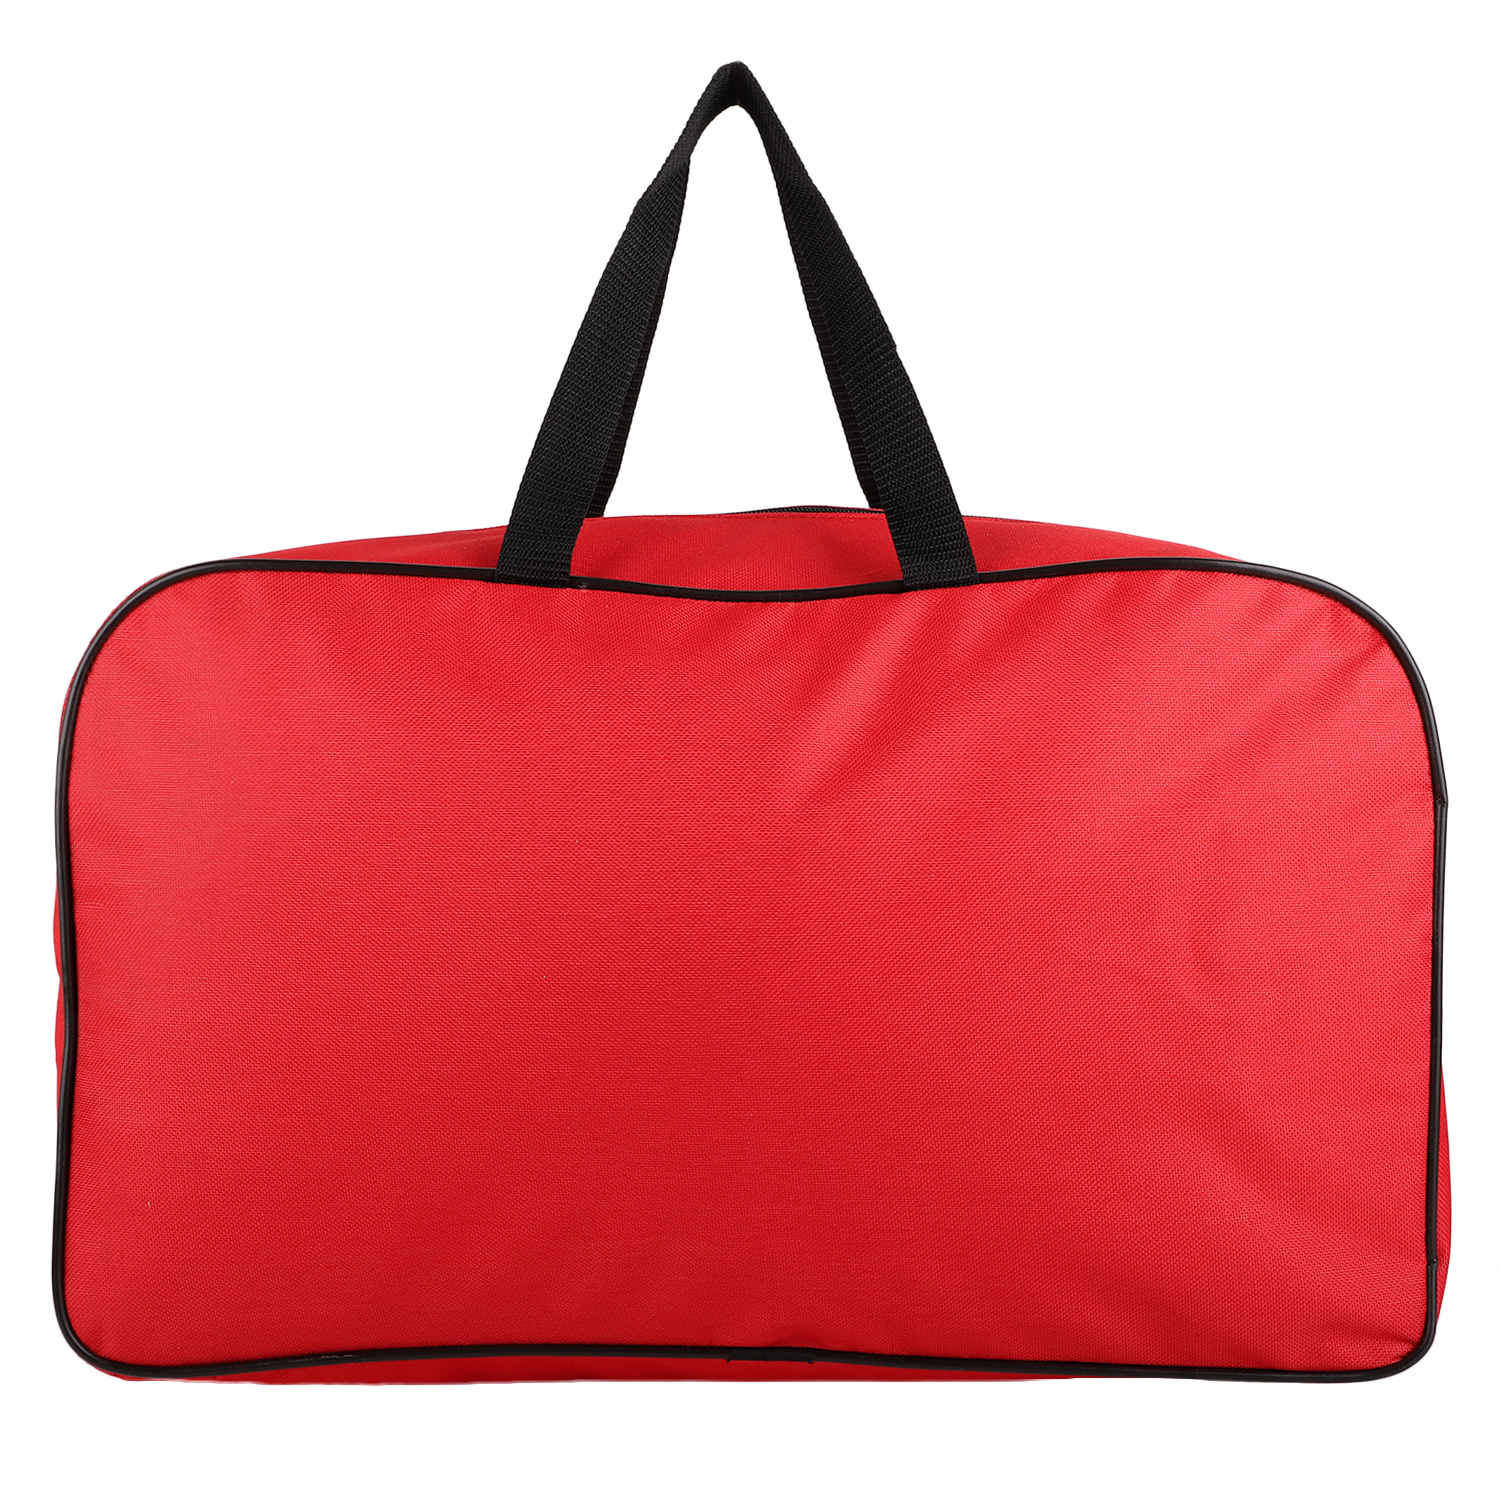 Promotional Bag/ Travelling bag